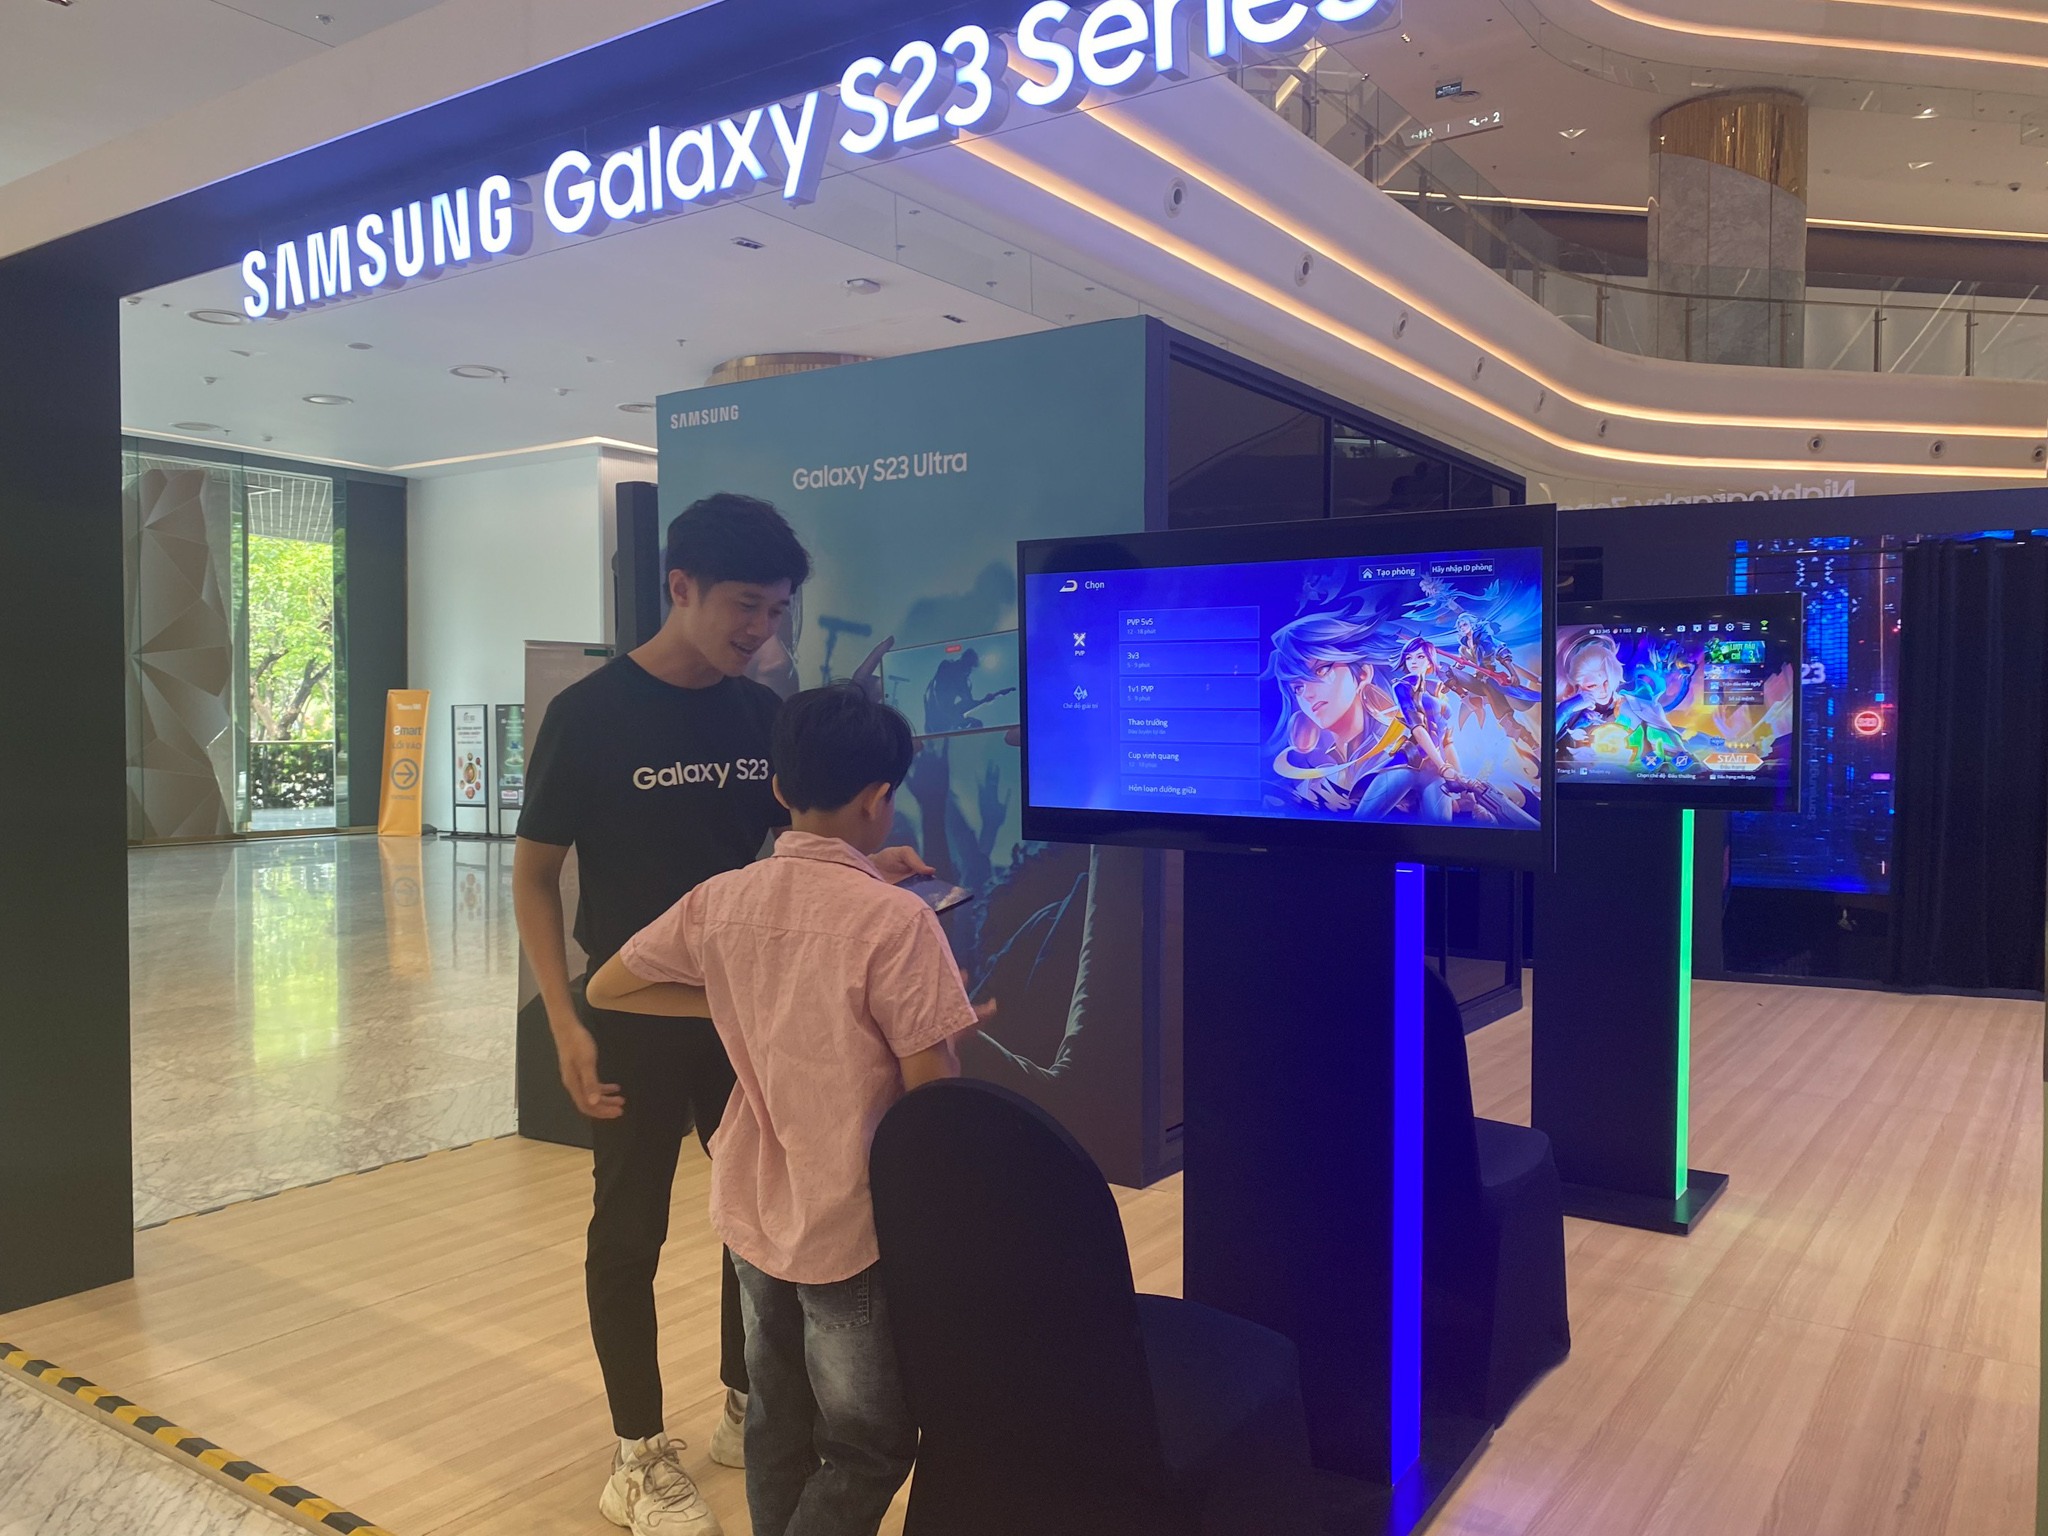 Hàng trăm Sam fans hào hứng trải nghiệm smartphone cao cấp nhất của Samsung